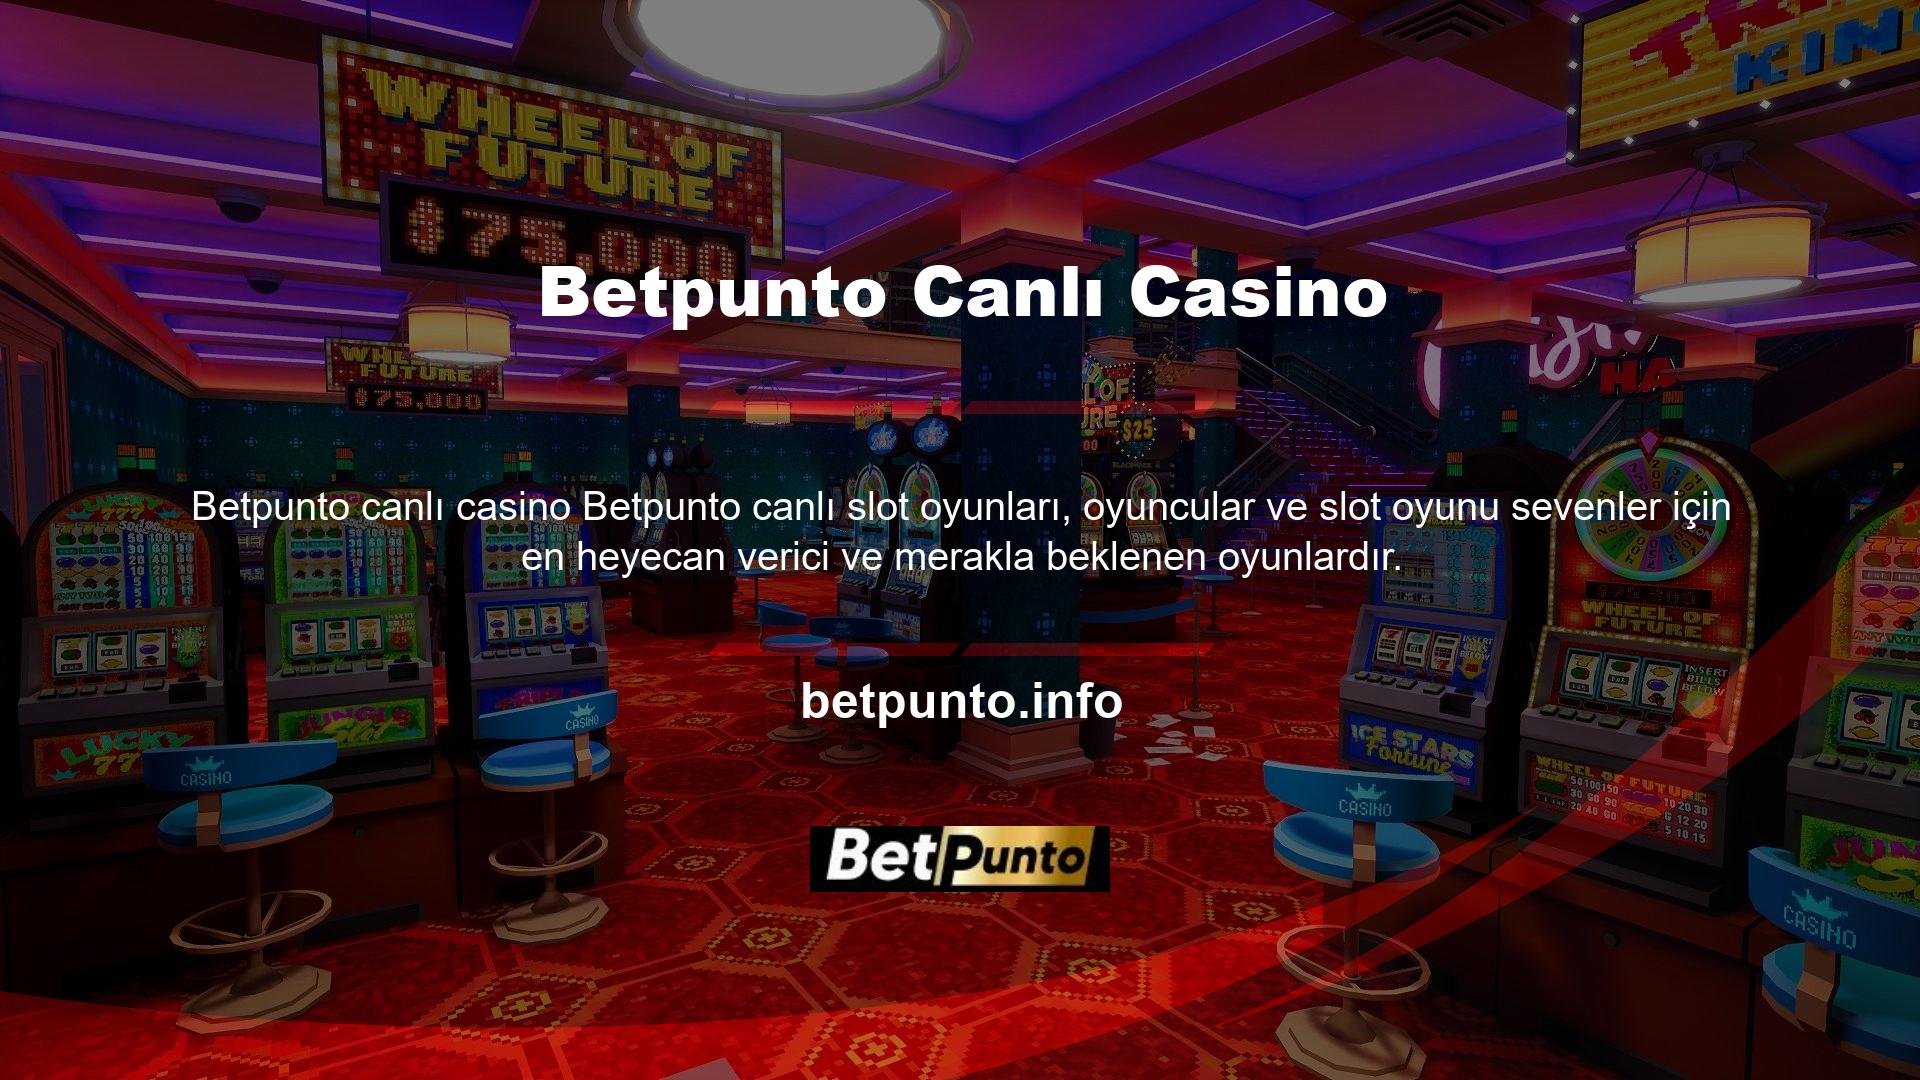 Betpunto canlı casino oyunları özel oyunlarla geri döndü ve poker oyunlarının yanı sıra rulet gibi oyunlar da oynayabilirsiniz